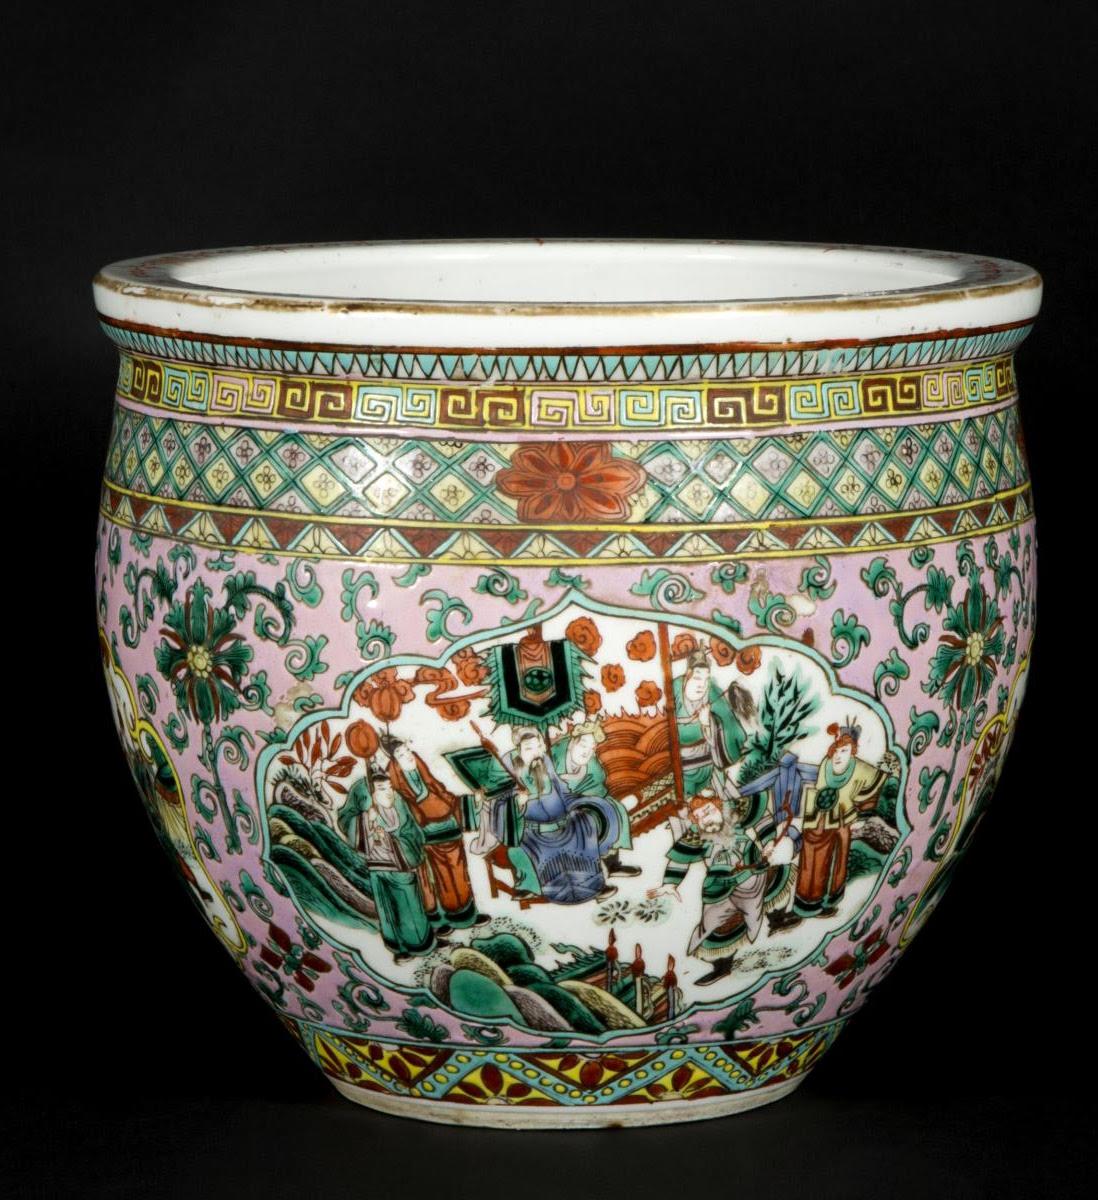 Canton porcelain cache pot, 20th century.

Canton porcelain fish bowl, early 20th century.

Dimensions h: 23cm, d: 26cm